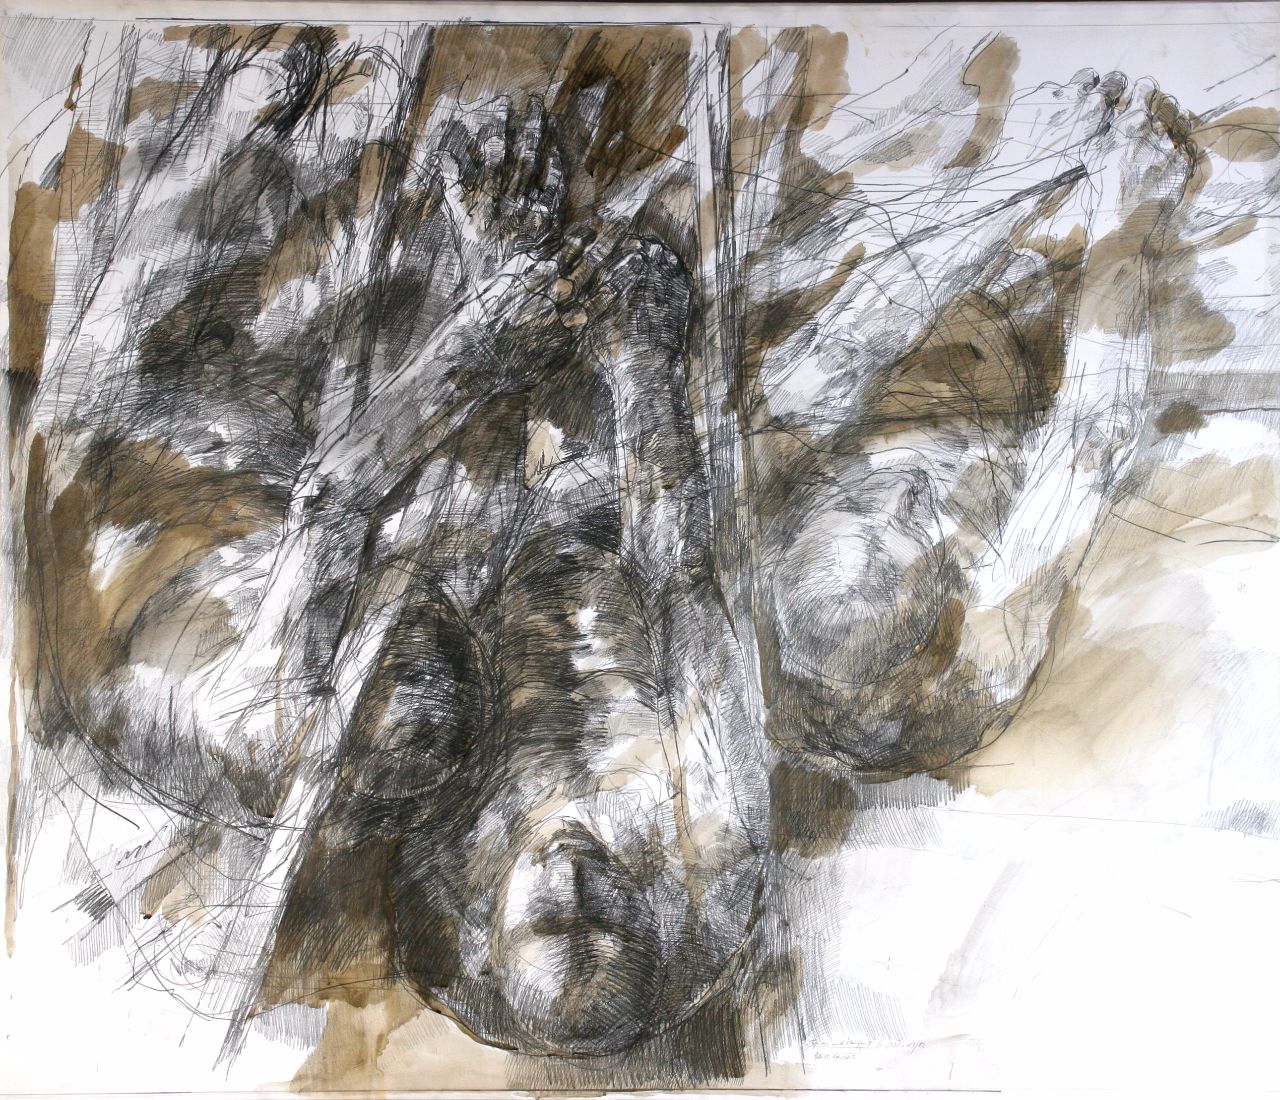 Roland Dörfler, Figuren und Stangen II, 1981/82, Bleistift laviert, 120 cm x 140 cm, Preis auf Anfrage, Galerie Cyprian Brenner